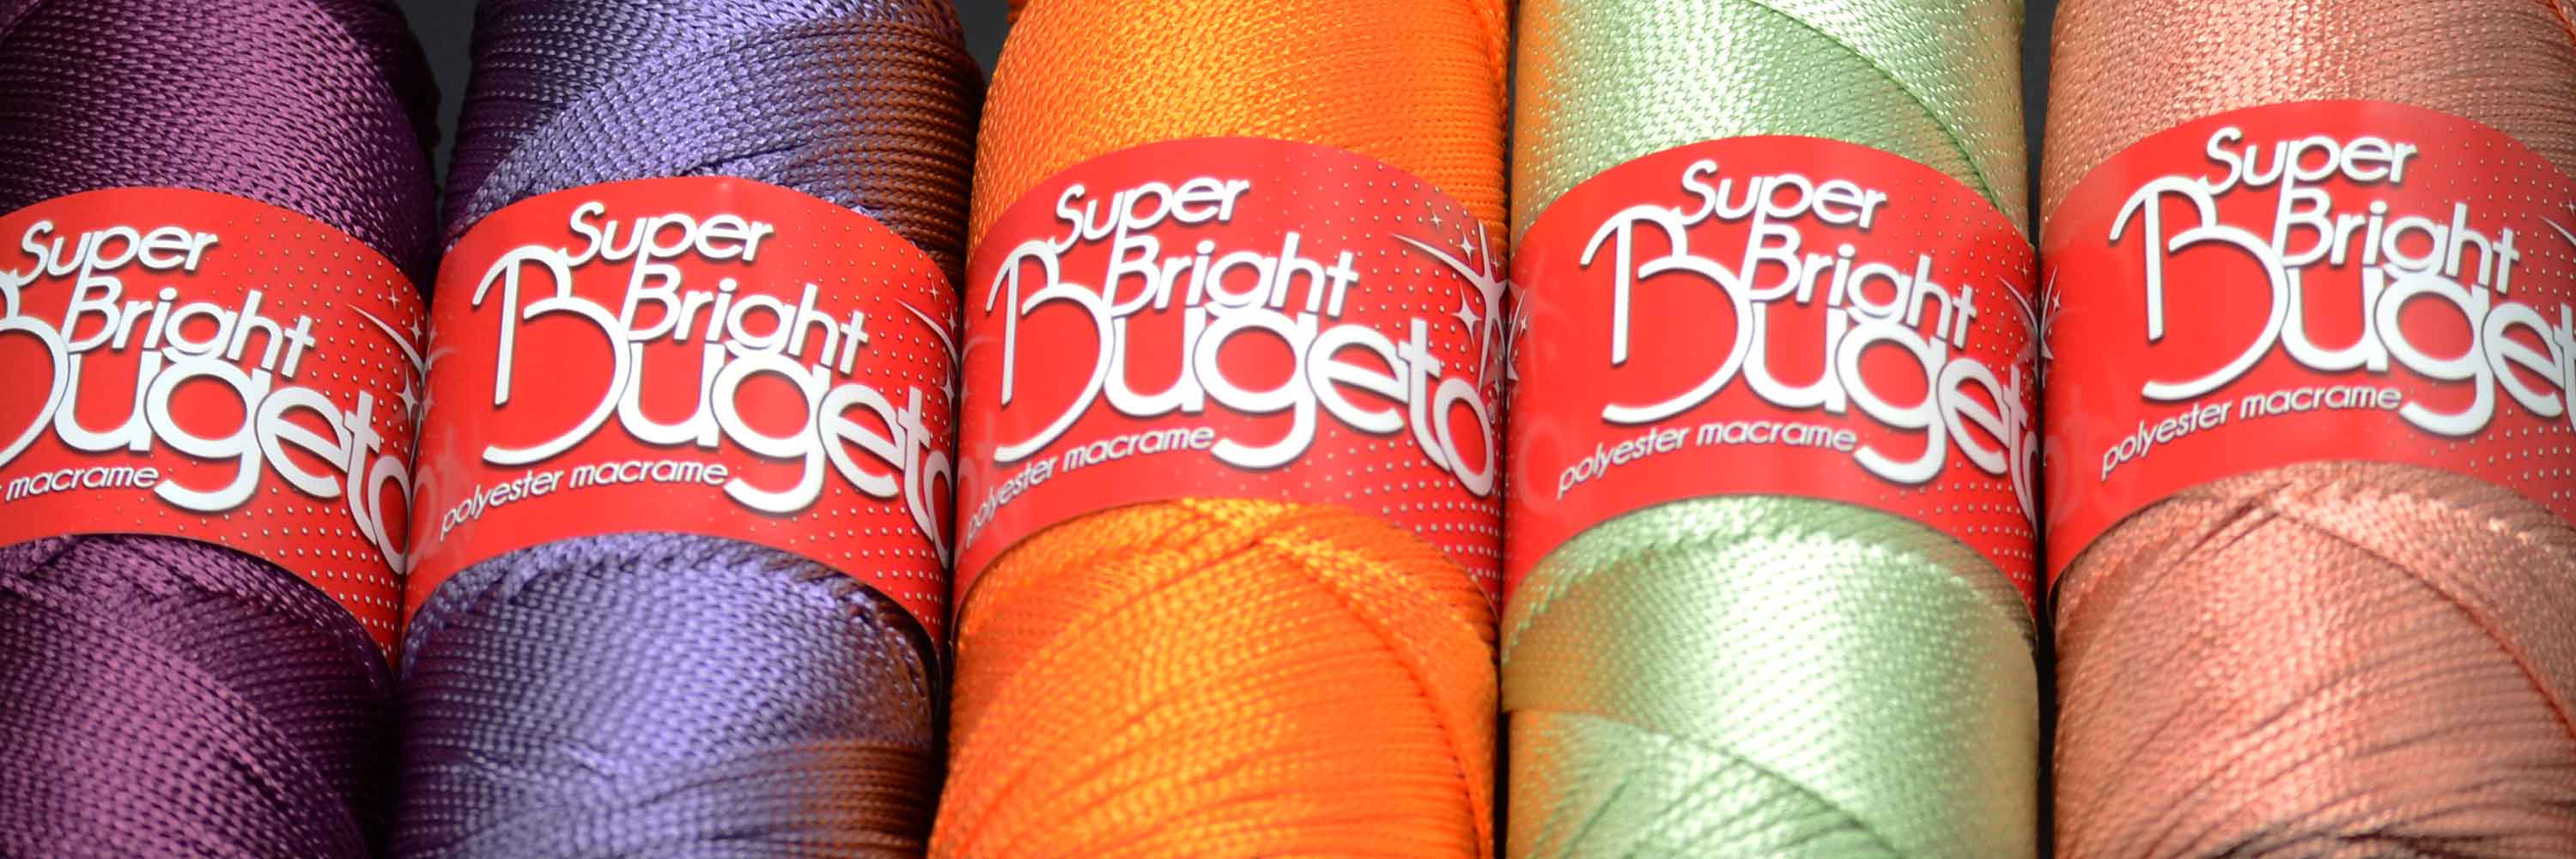 polyster yarns soft bright polyester macrame yarn yarn colored yarns bugeto yarn